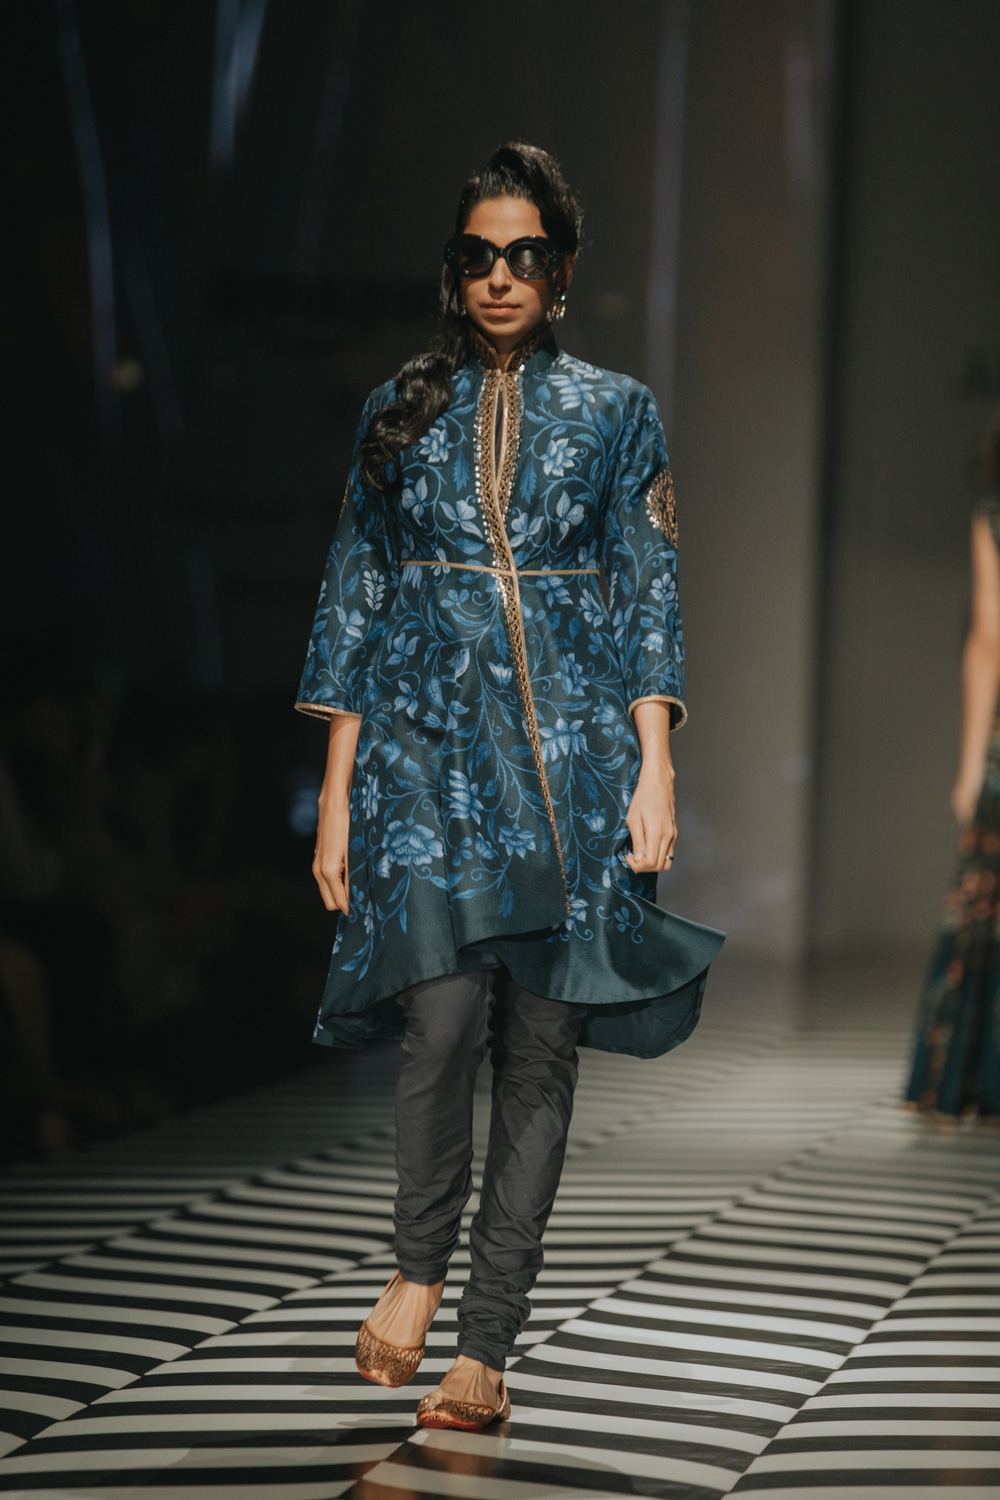 JJ Valaya FDCI Amazon India Fashion Week Spring Summer 2018 Look 5